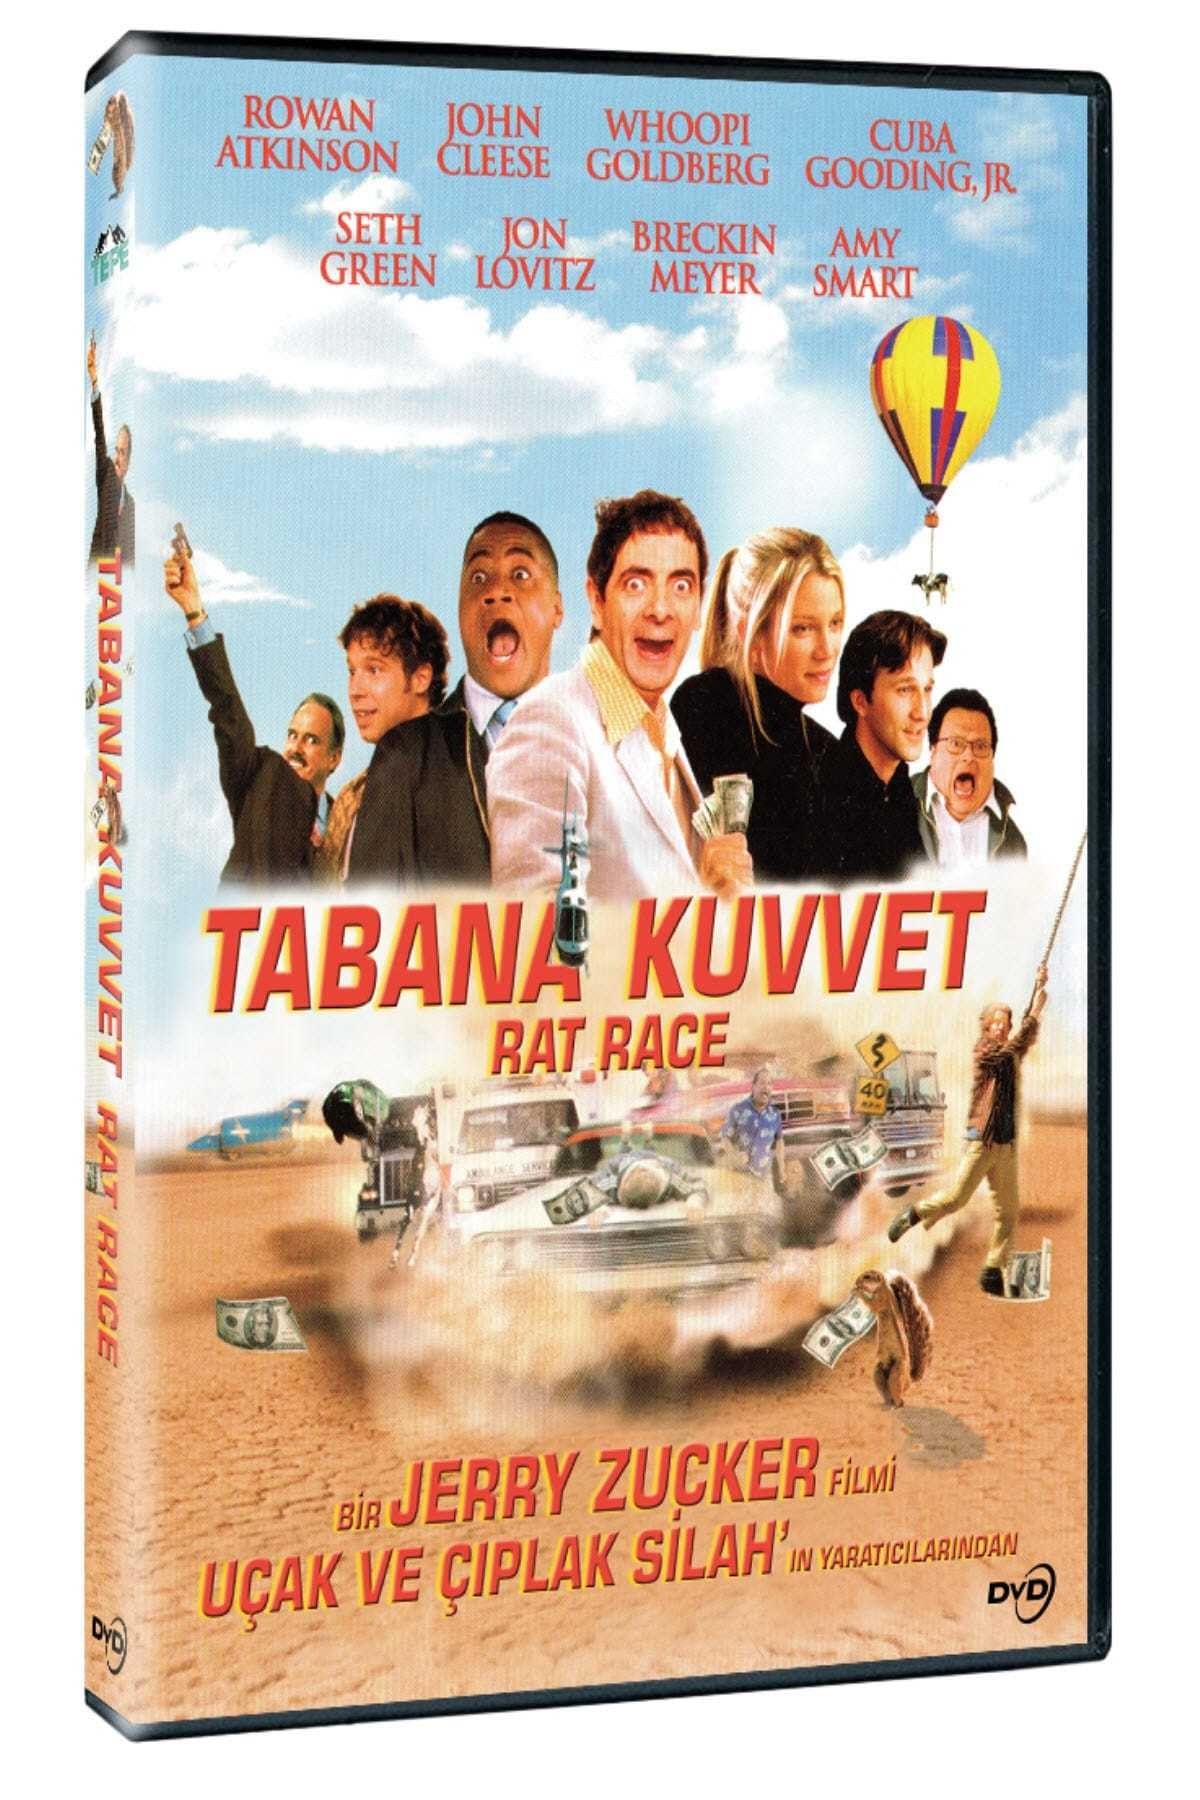 Rat Race (2001) Theatrical Cut 448Kbps 23.976Fps 48Khz 5.1Ch DVD Turkish Audio TAC